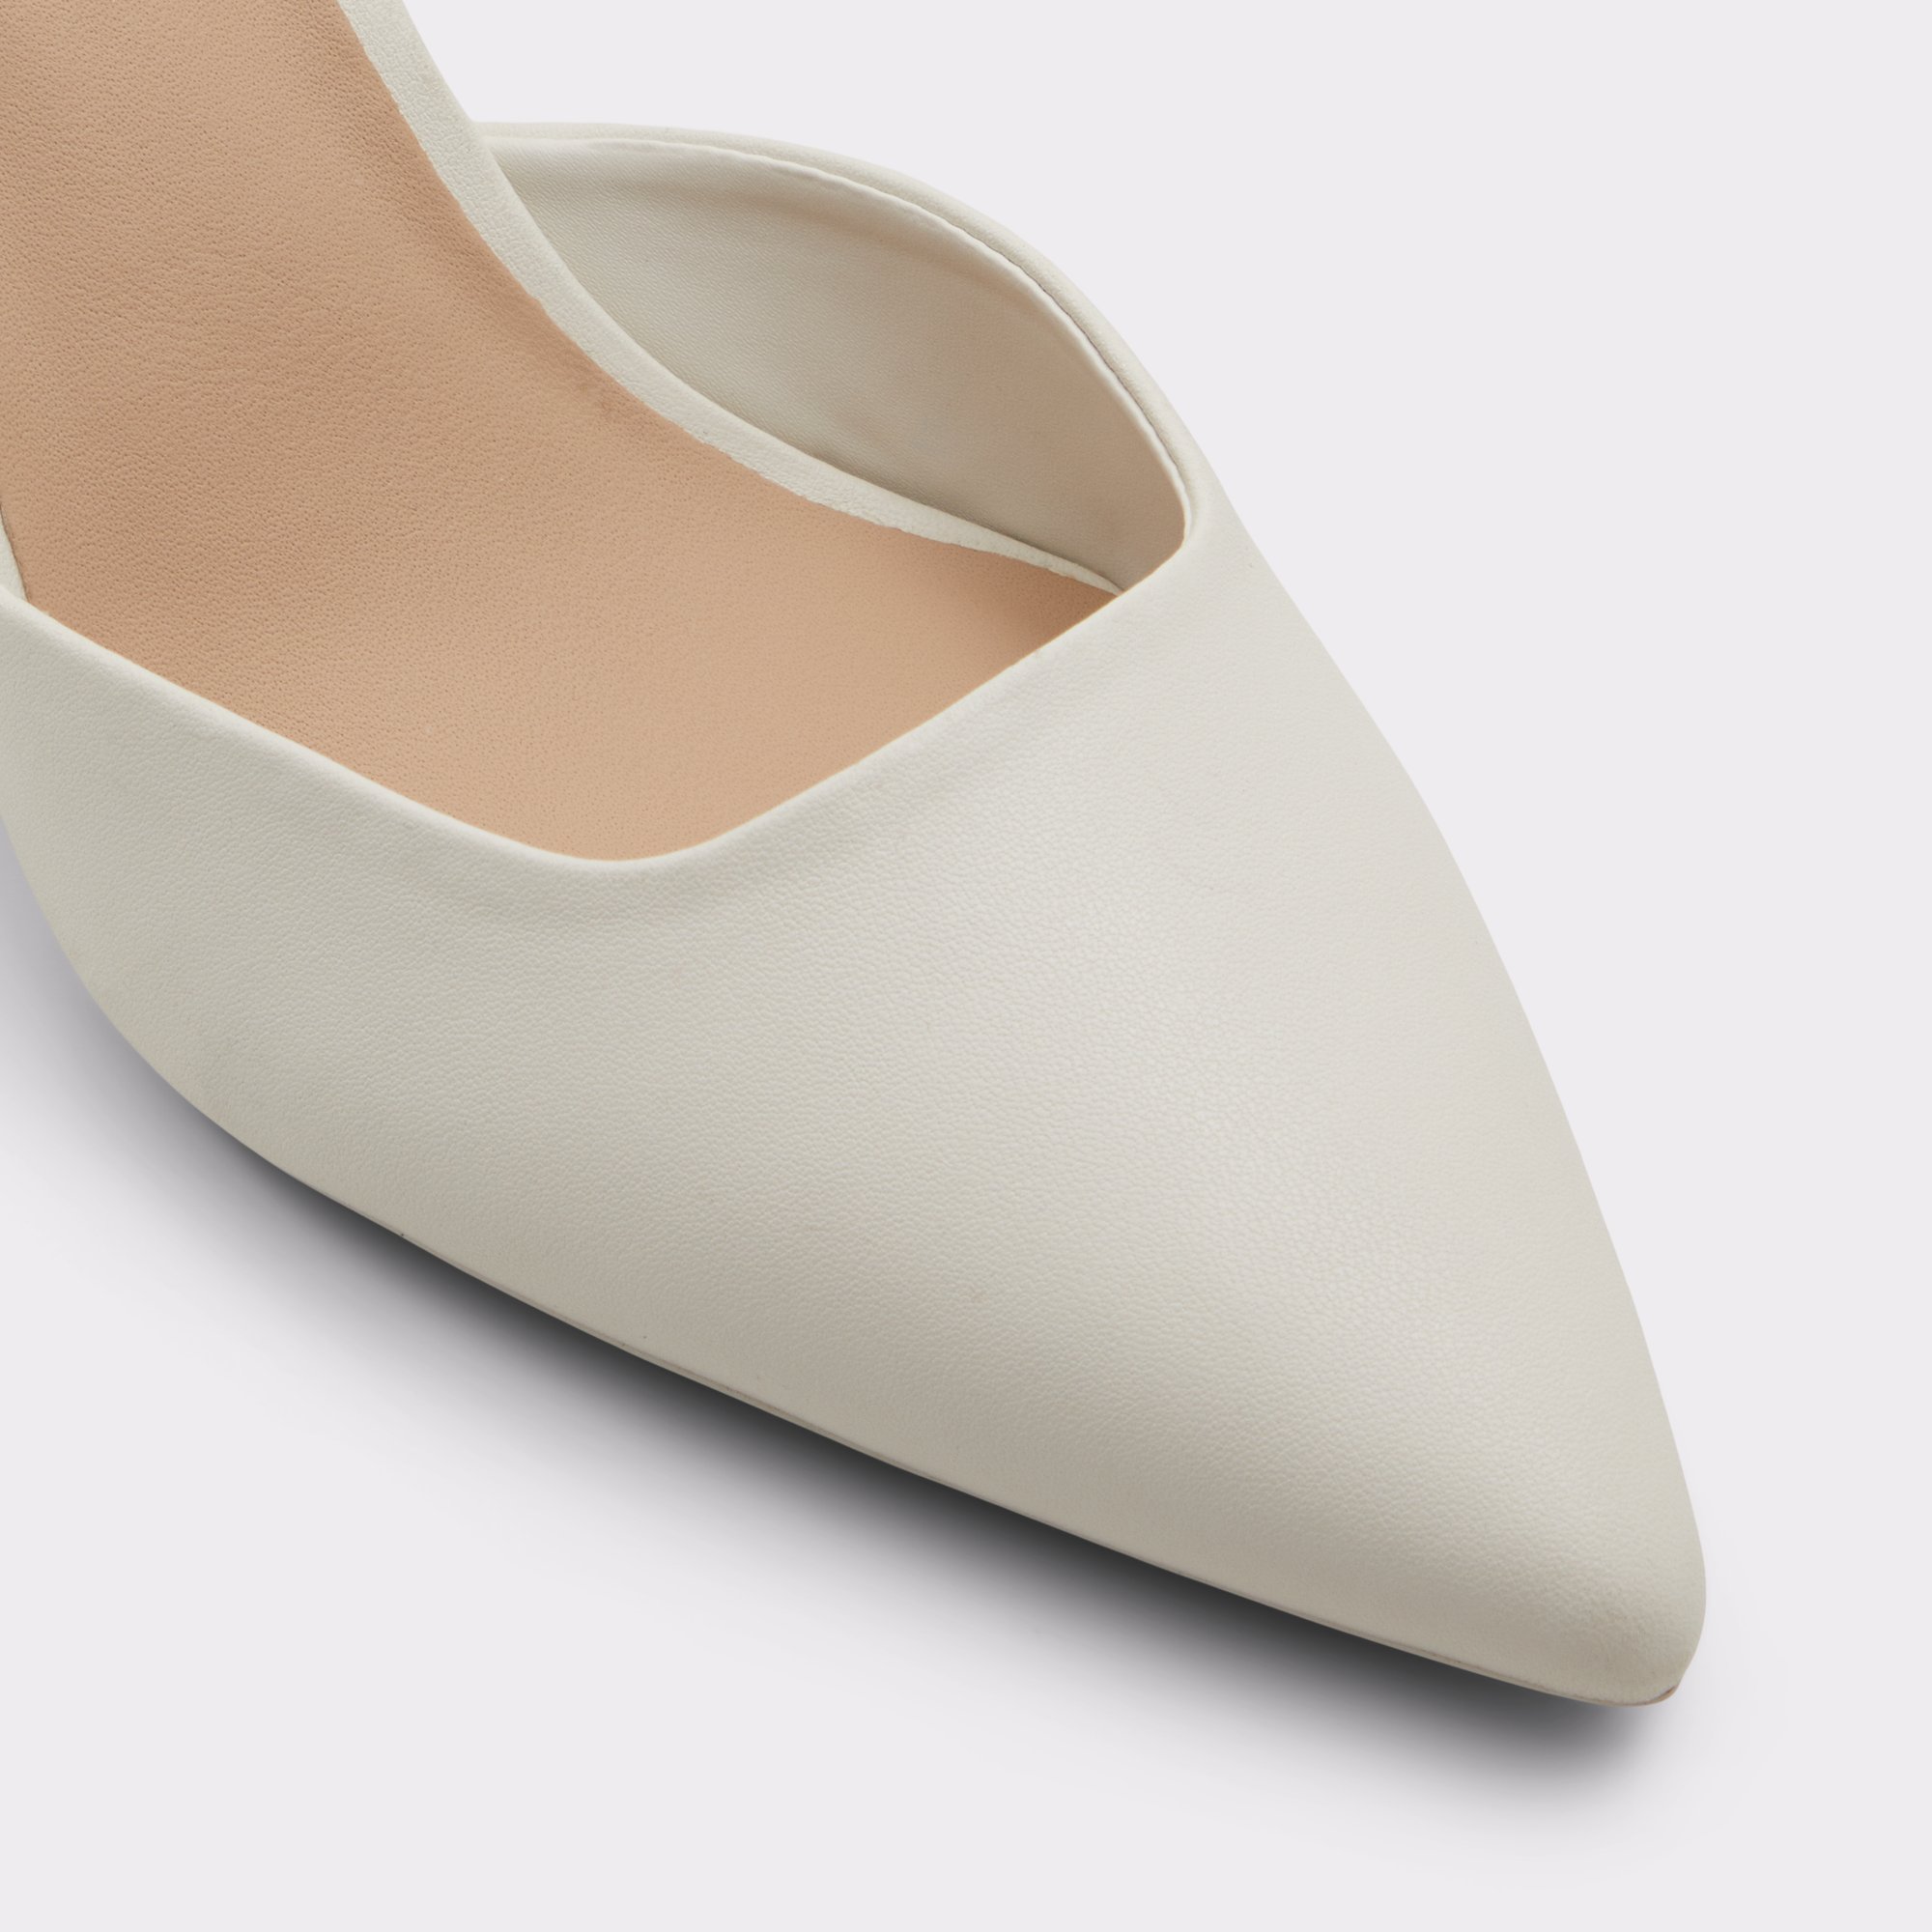 Basanti White-Bone Women's Kitten heels | ALDO Canada